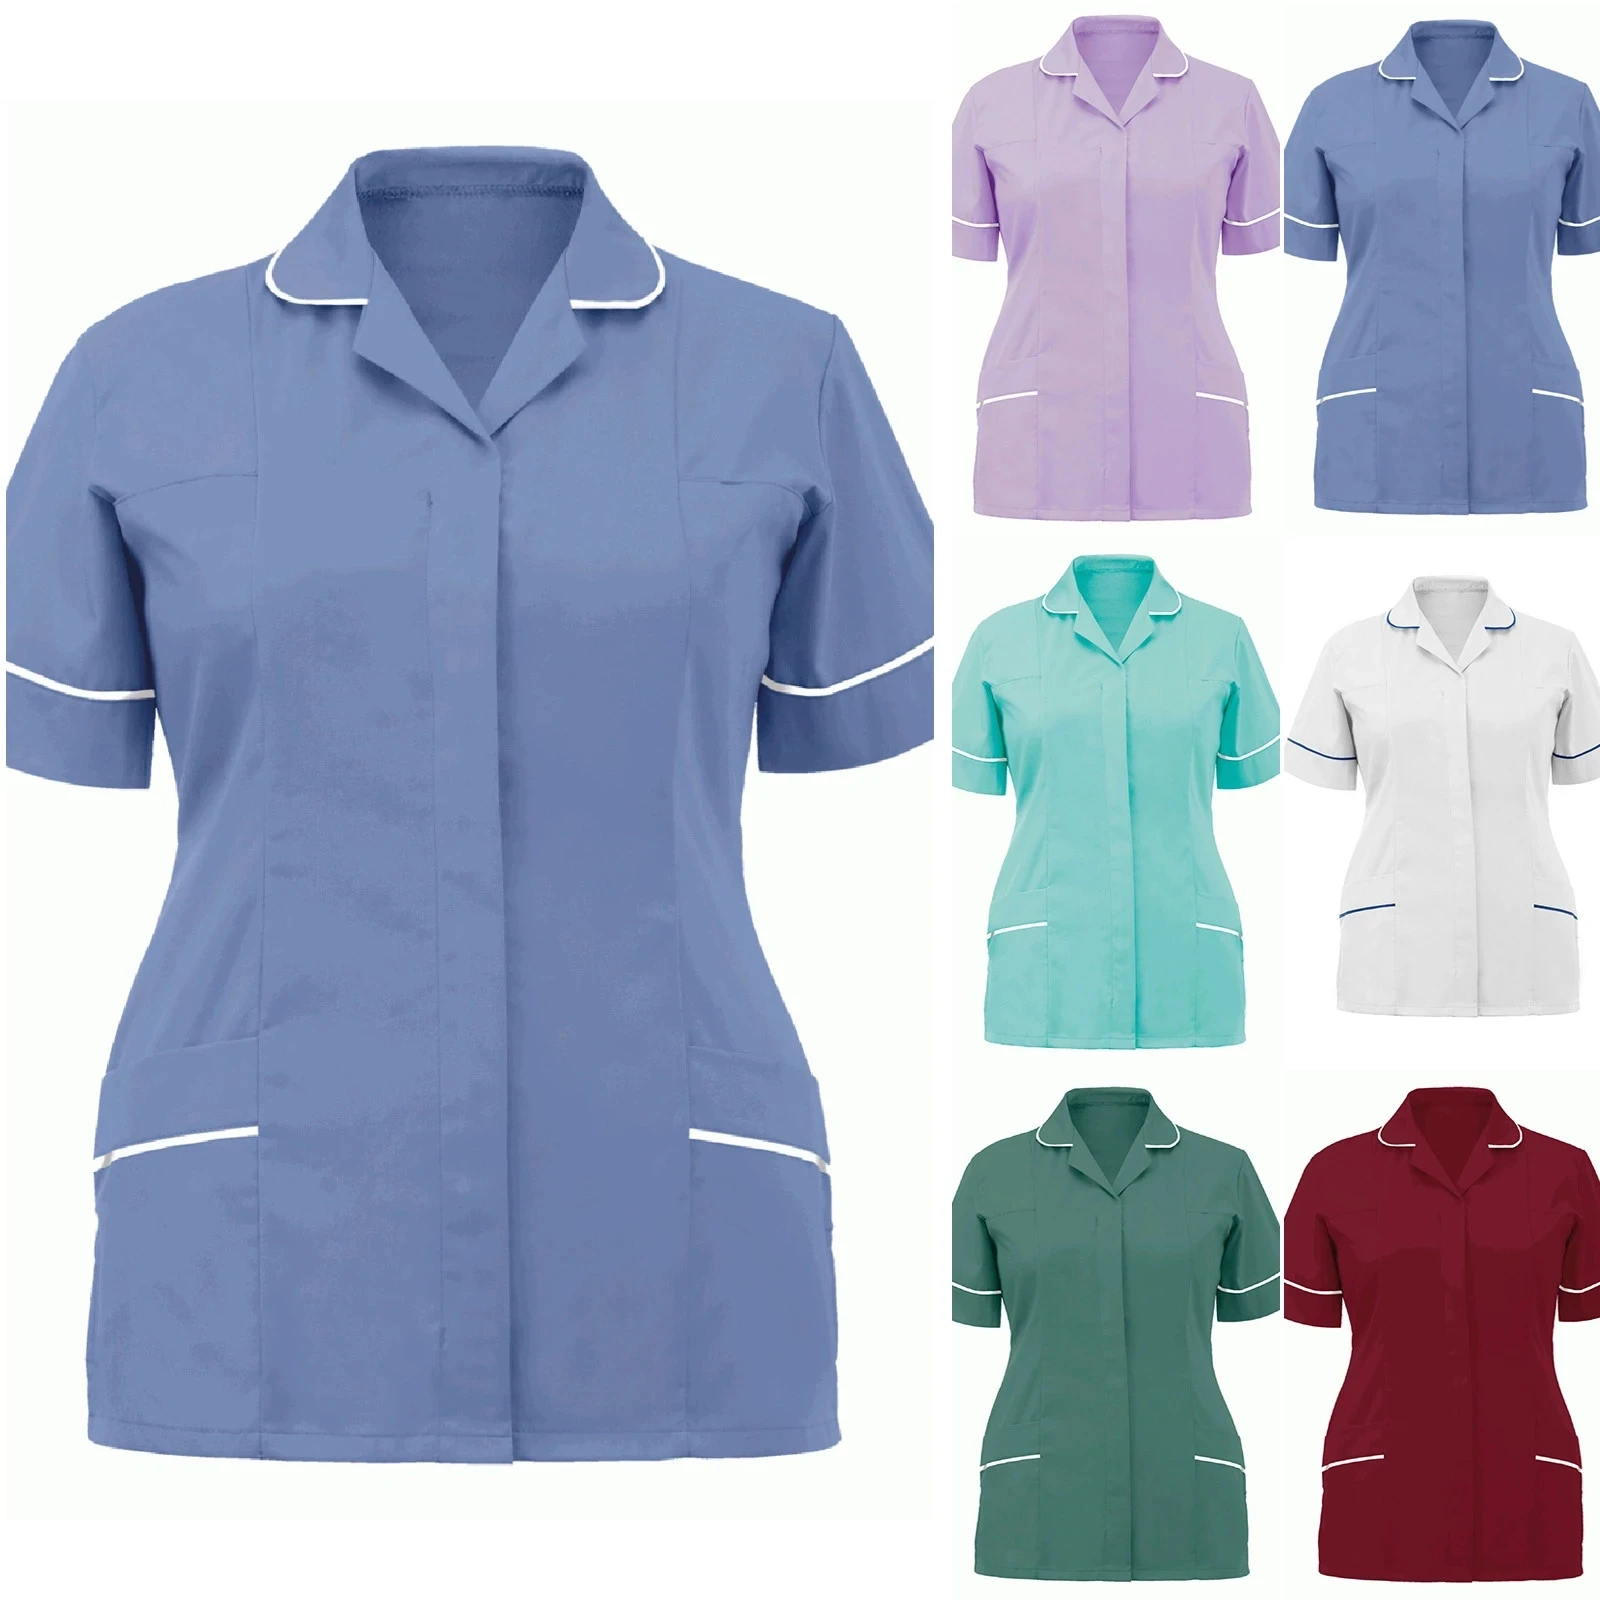 

Women's Nurses Tunic Uniform Clinic Carer Lapel Protective Clothing Tops Summer Ladies Fashion Plus Size Sexy Nurse Uniform